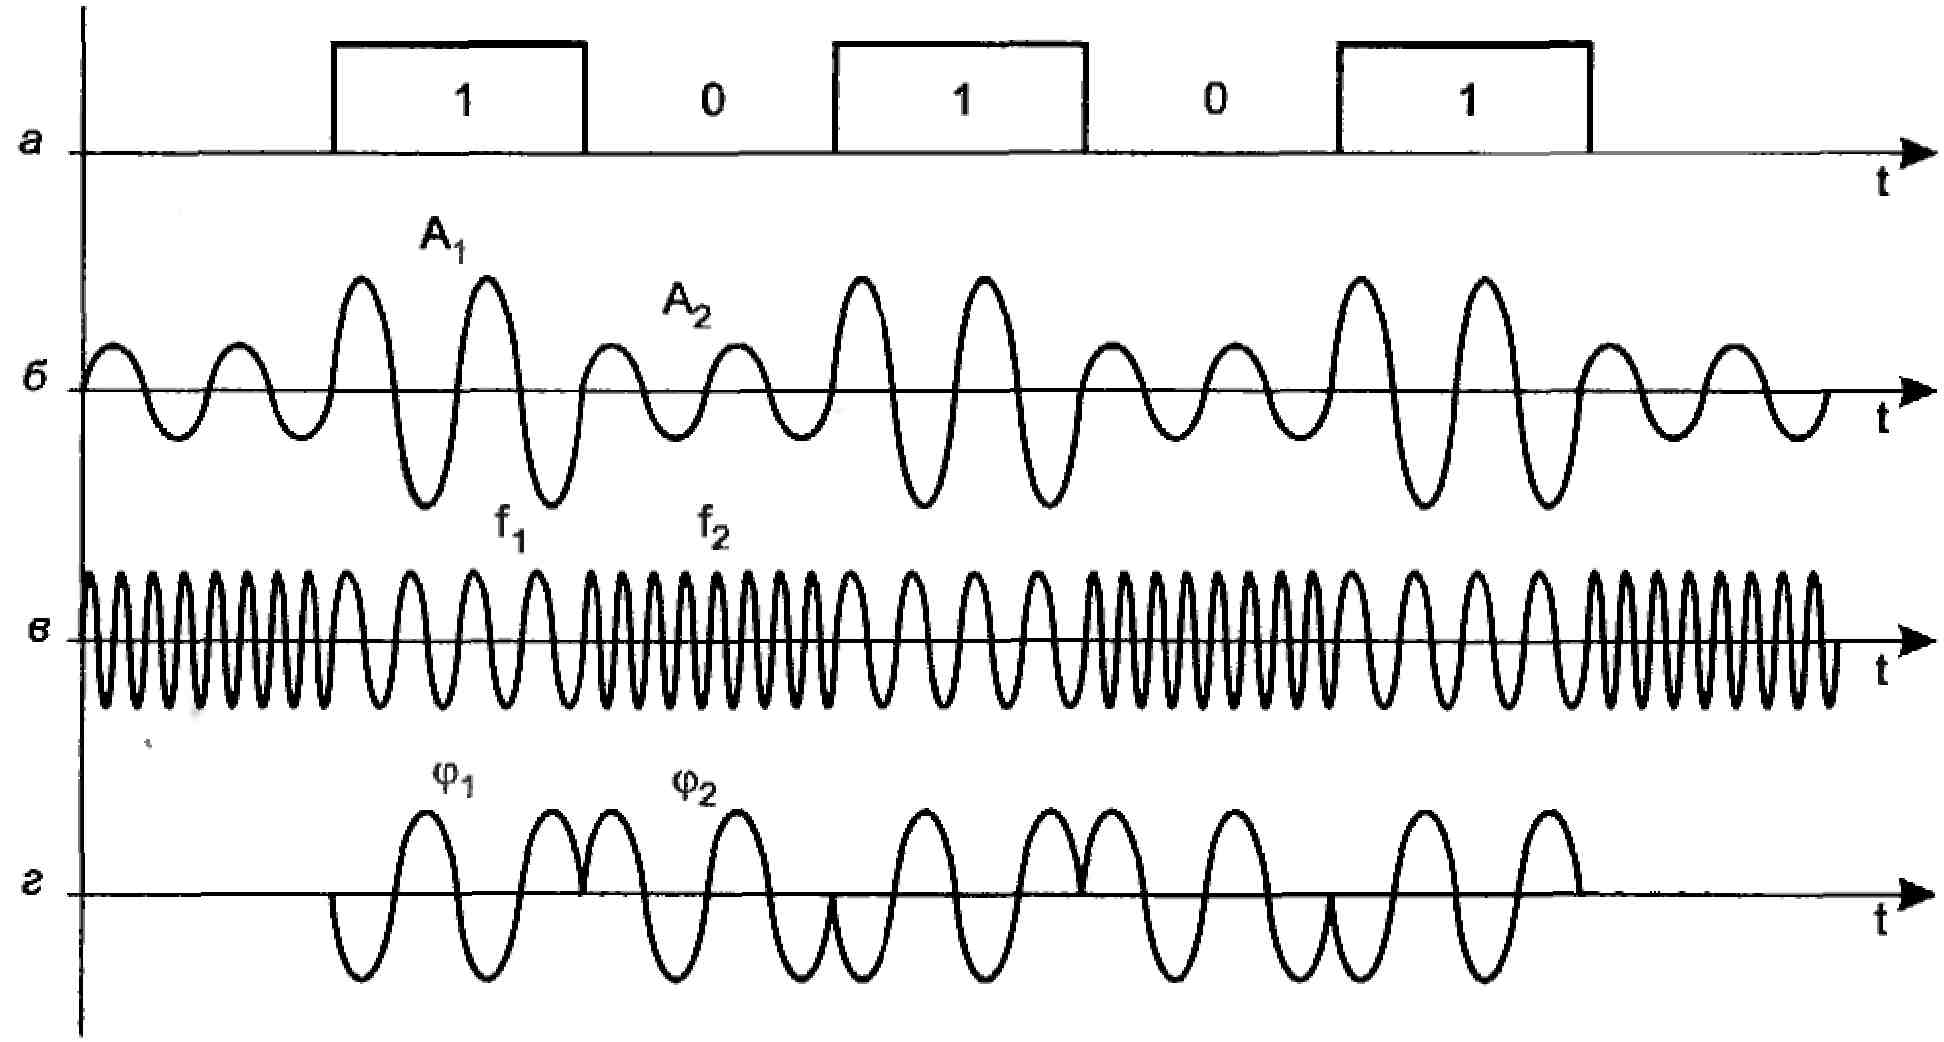 Частота информационного сигнала. Фазовая модуляция аналогового сигнала. Схема модуляция амплитудная фазовая частотная. Временная диаграмма фазомодулированного сигнала. Виды модуляции сигналов.